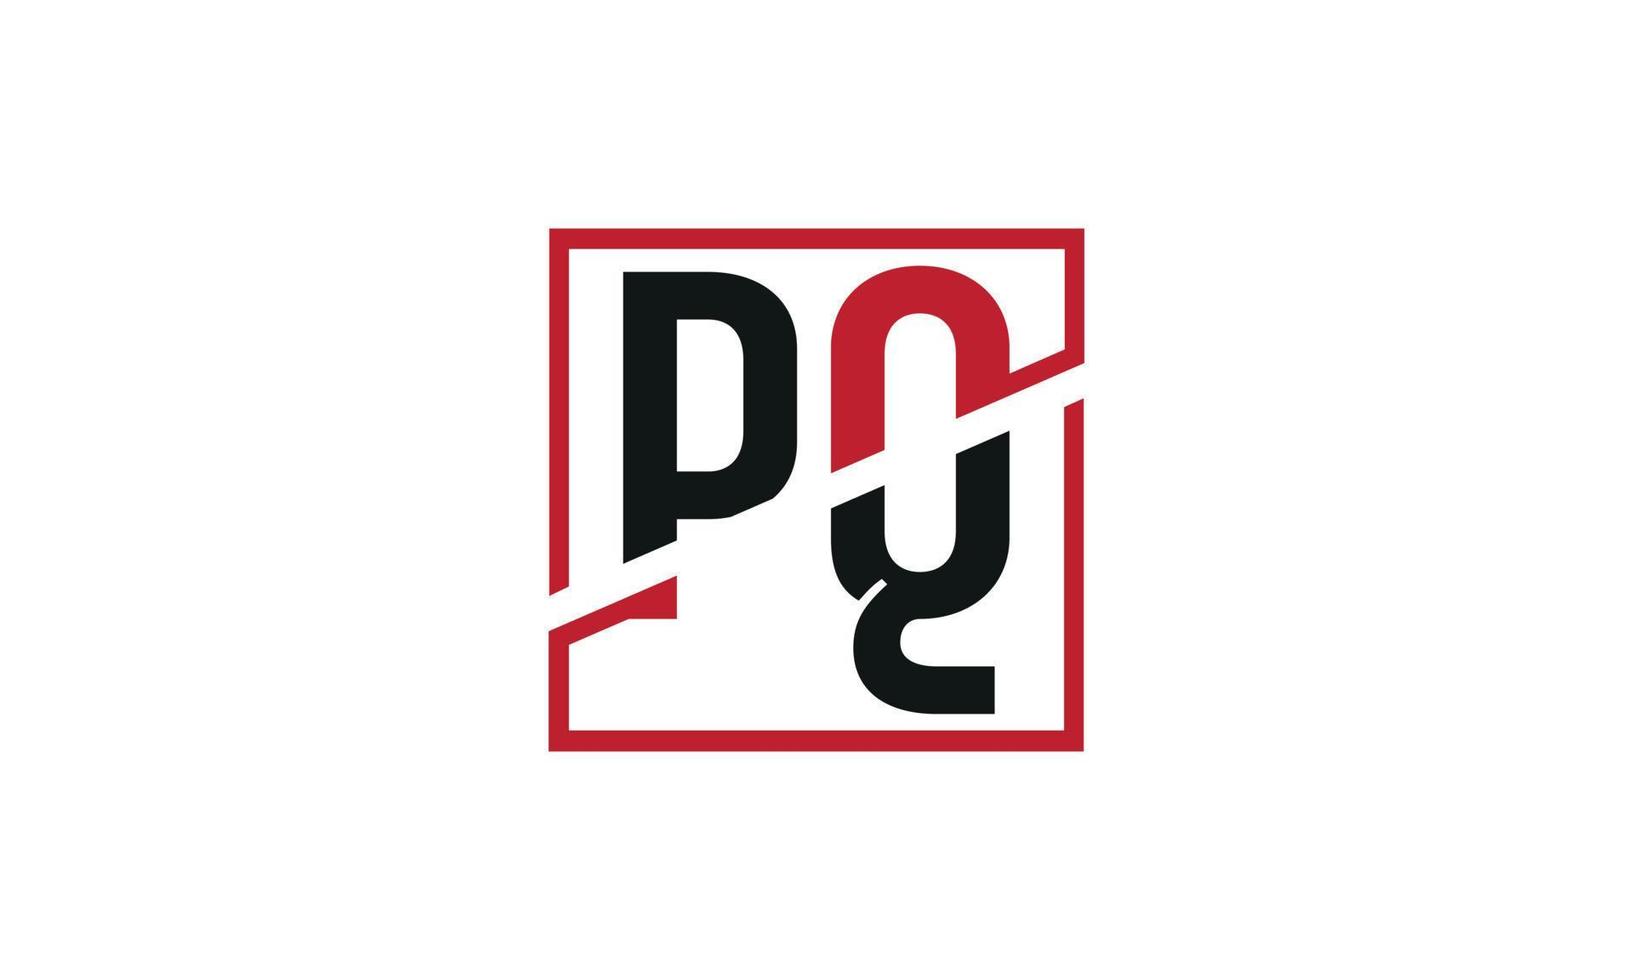 Buchstabe pq Logo pro Vektordatei pro Vektor